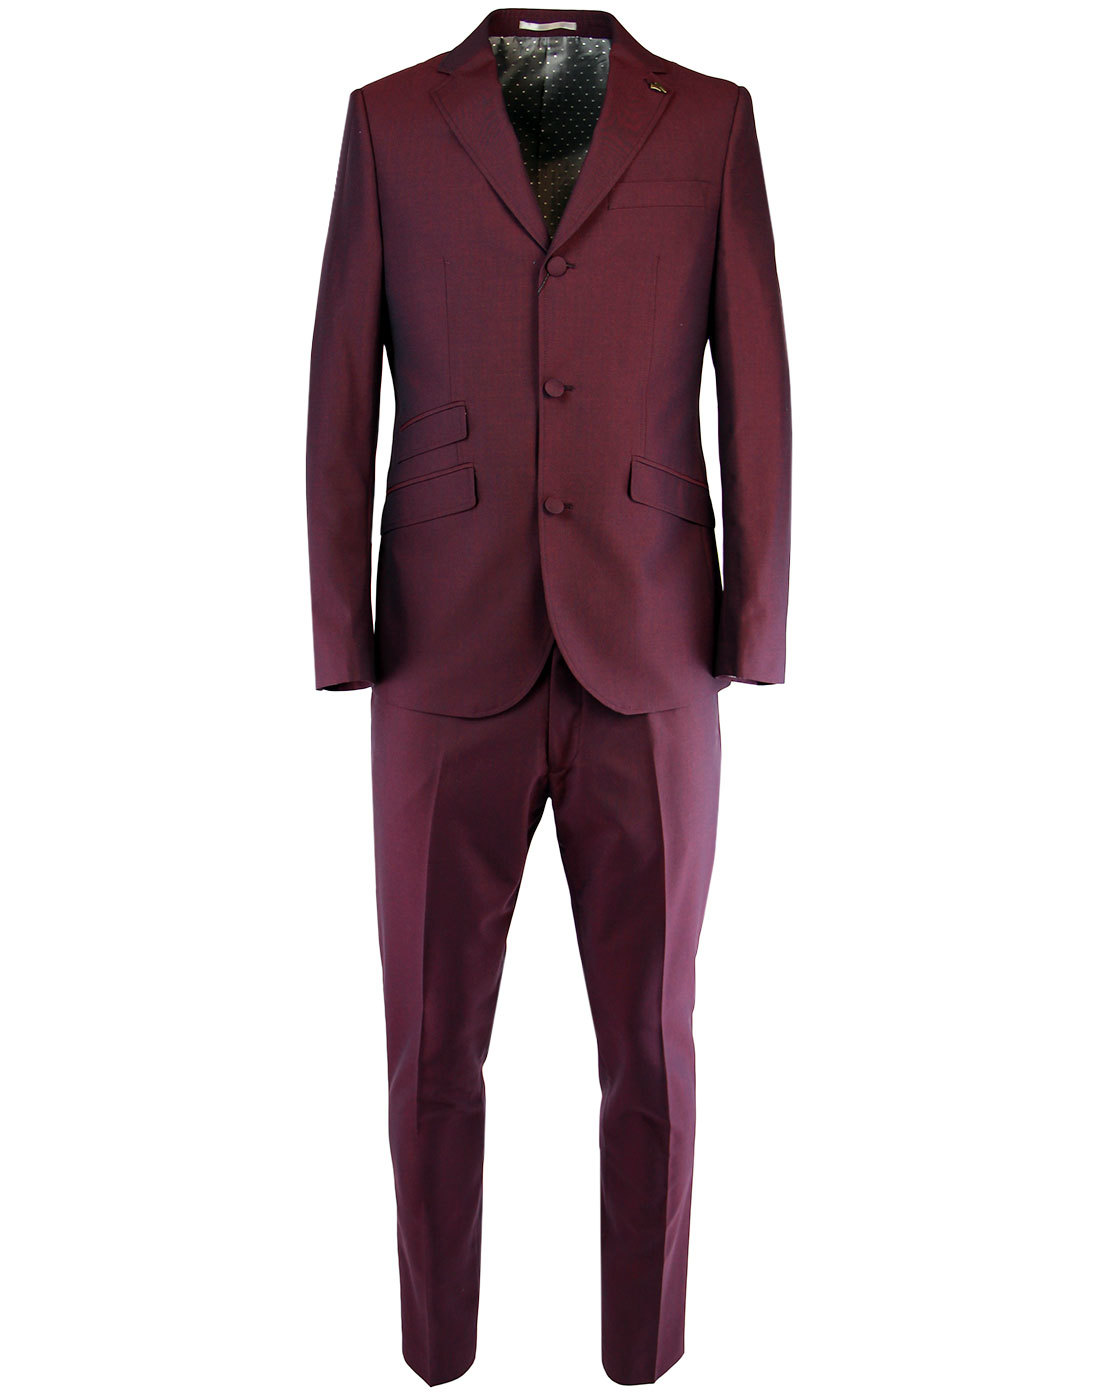 GABICCI VINTAGE Men's Retro Mod 70s Tonic Mod Suit